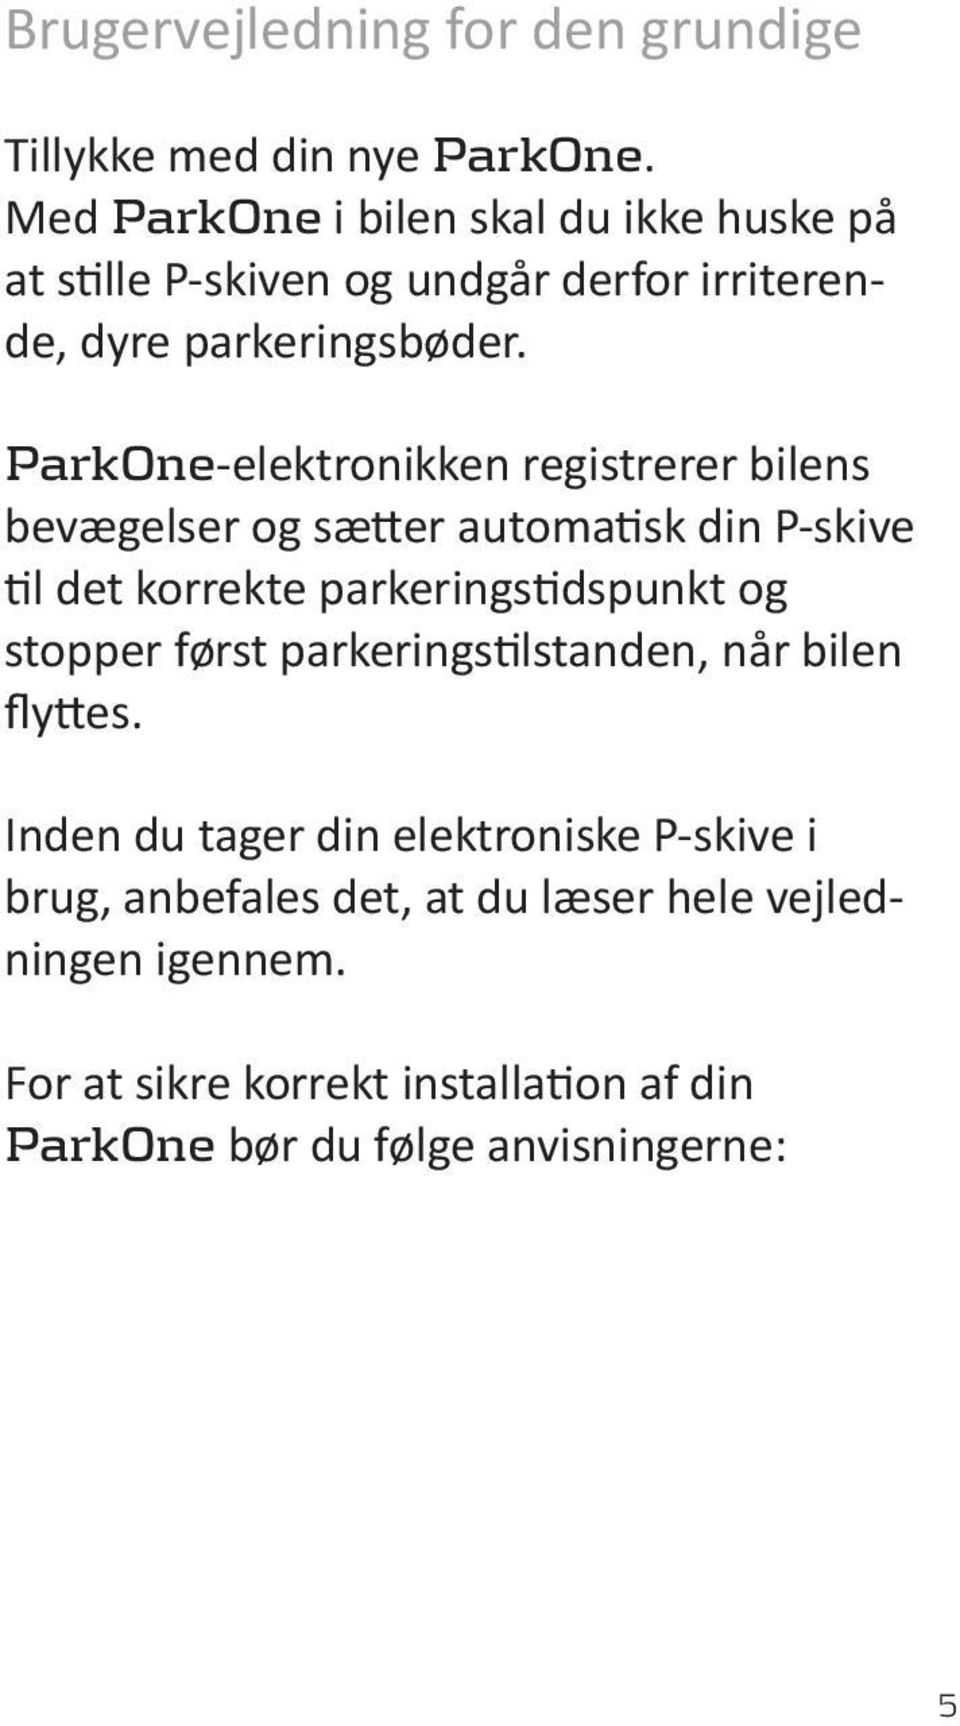 ParkOne-elektronikken registrerer bilens bevægelser og sætter automatisk din P-skive til det korrekte parkeringstidspunkt og stopper